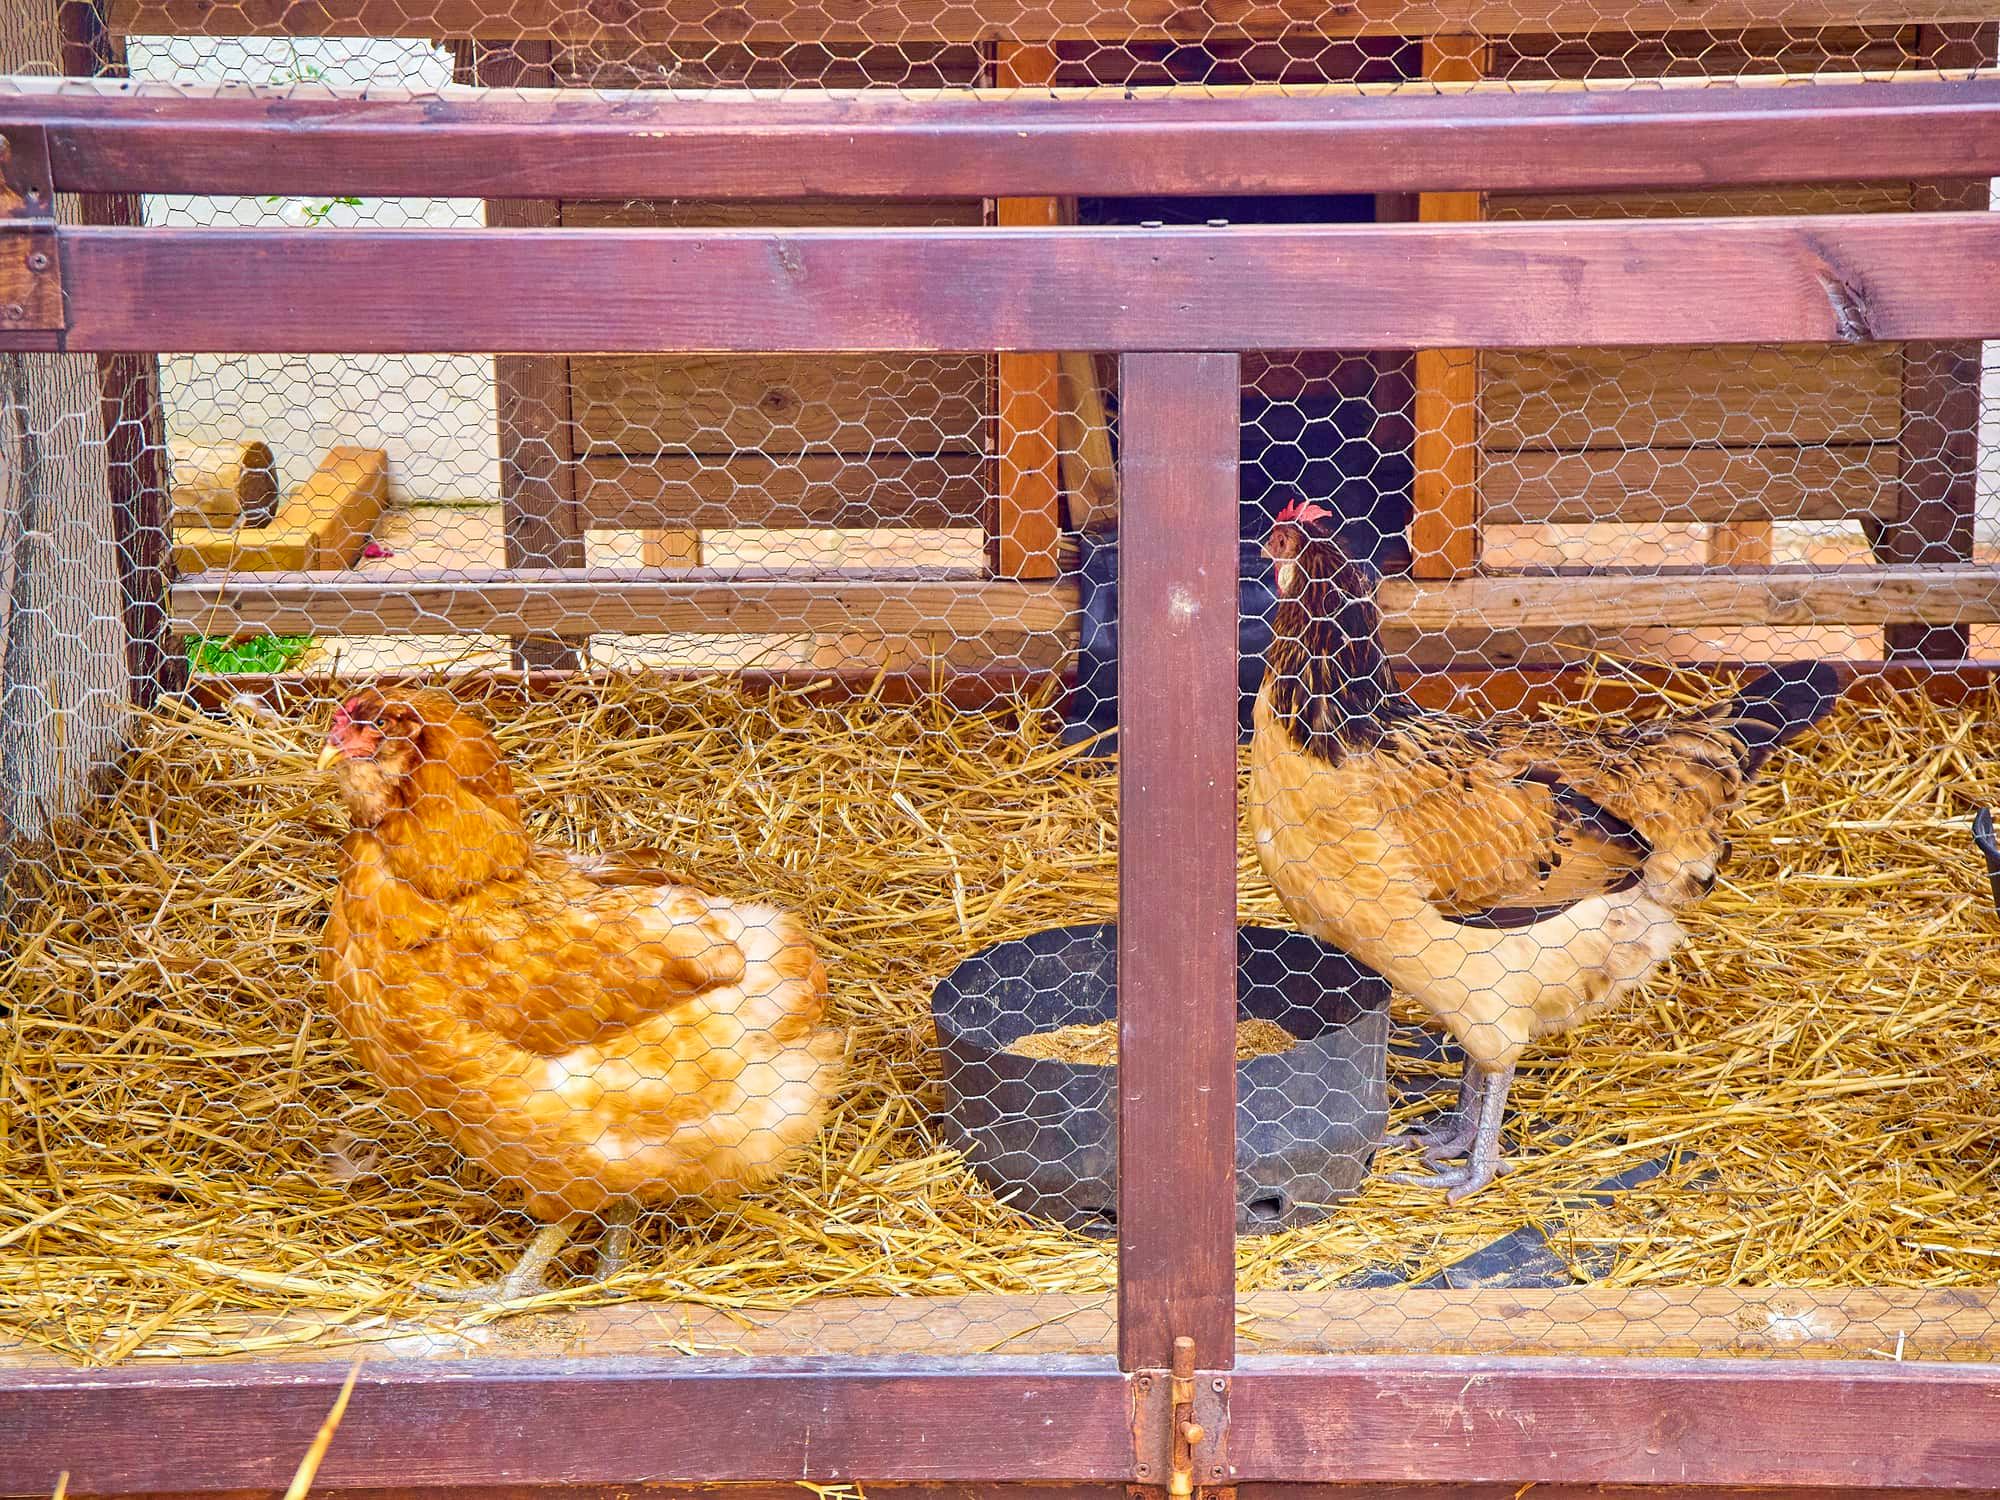 Hens eating grain in his chicken coop.